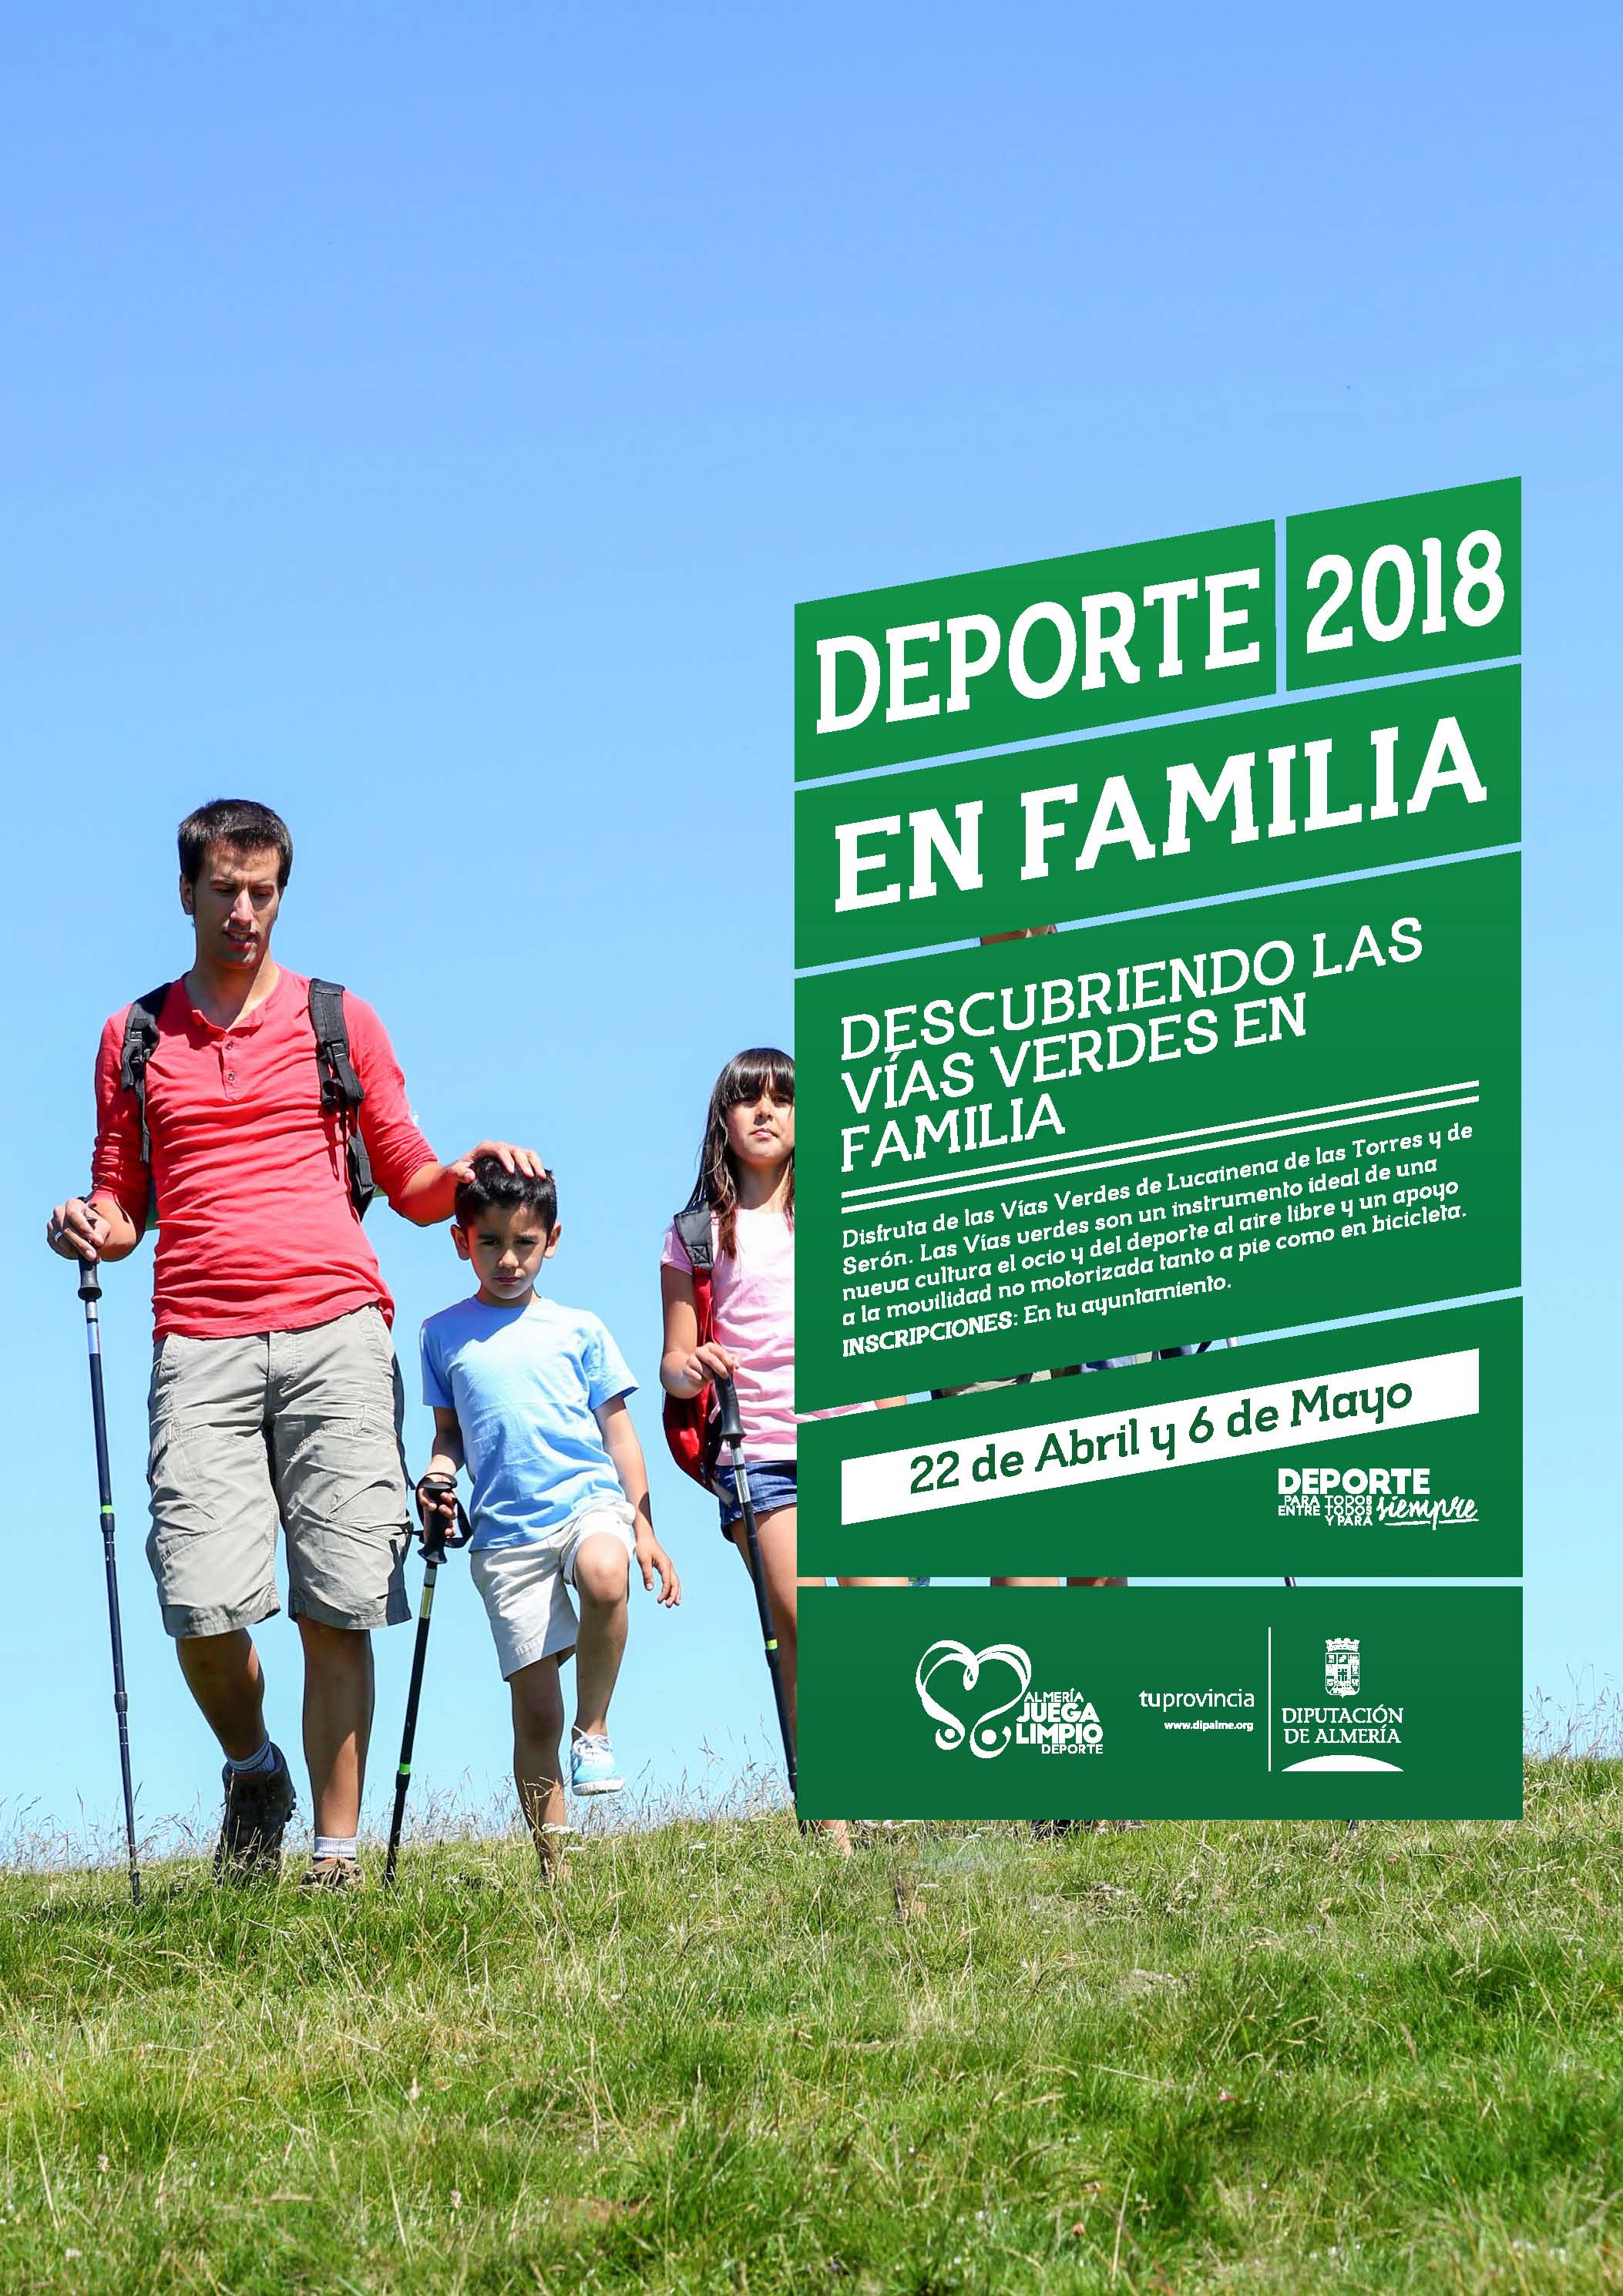 DEPORTE EN FAMILIA - DESCUBRIENDO LAS VÍAS VERDES - SERÓN - Domingo 13 Mayo